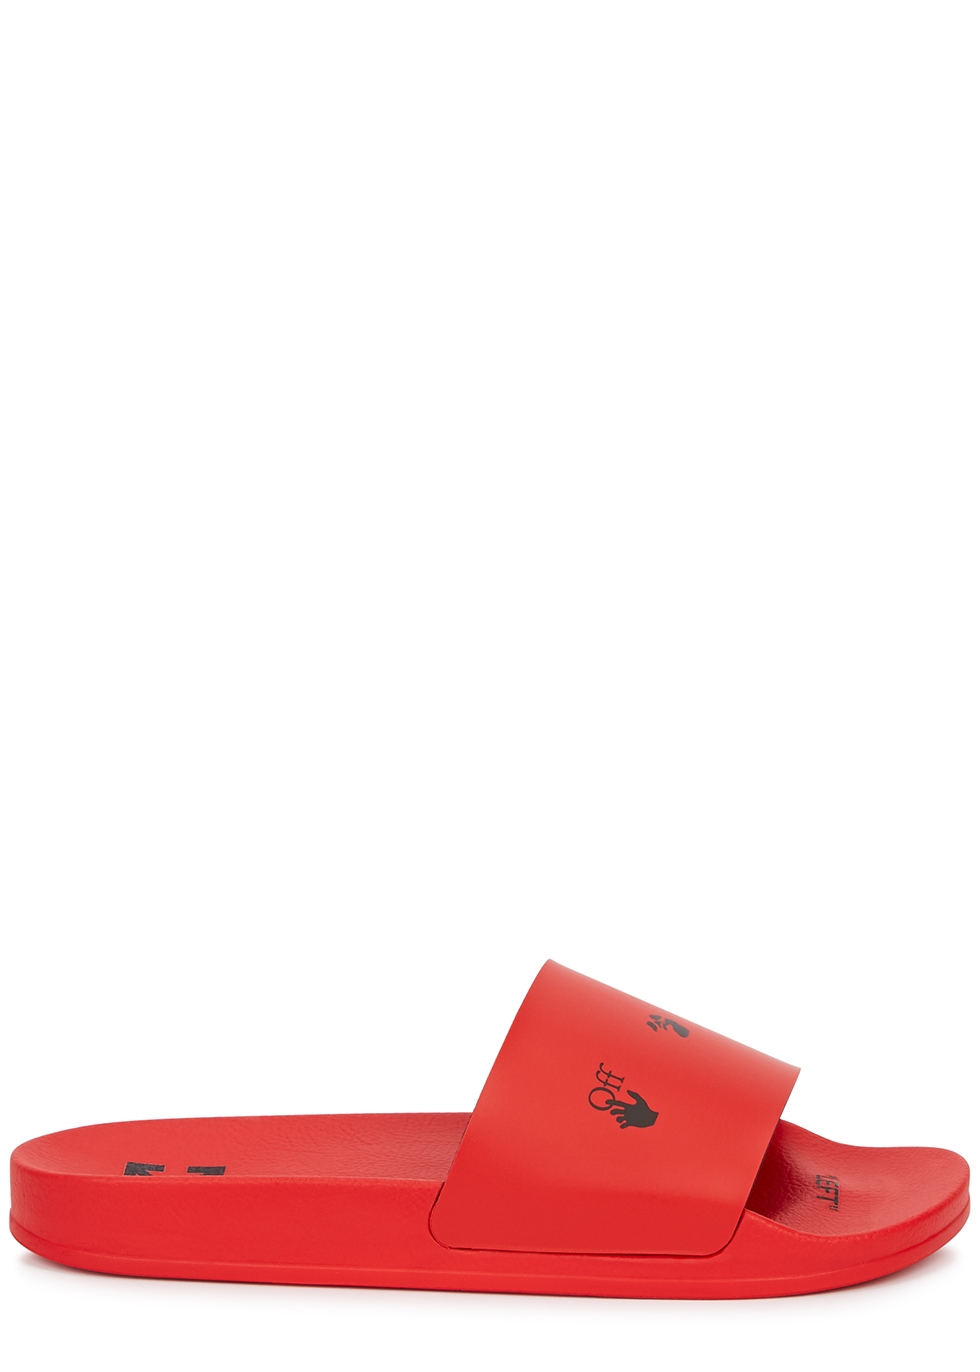 Red logo rubber sliders